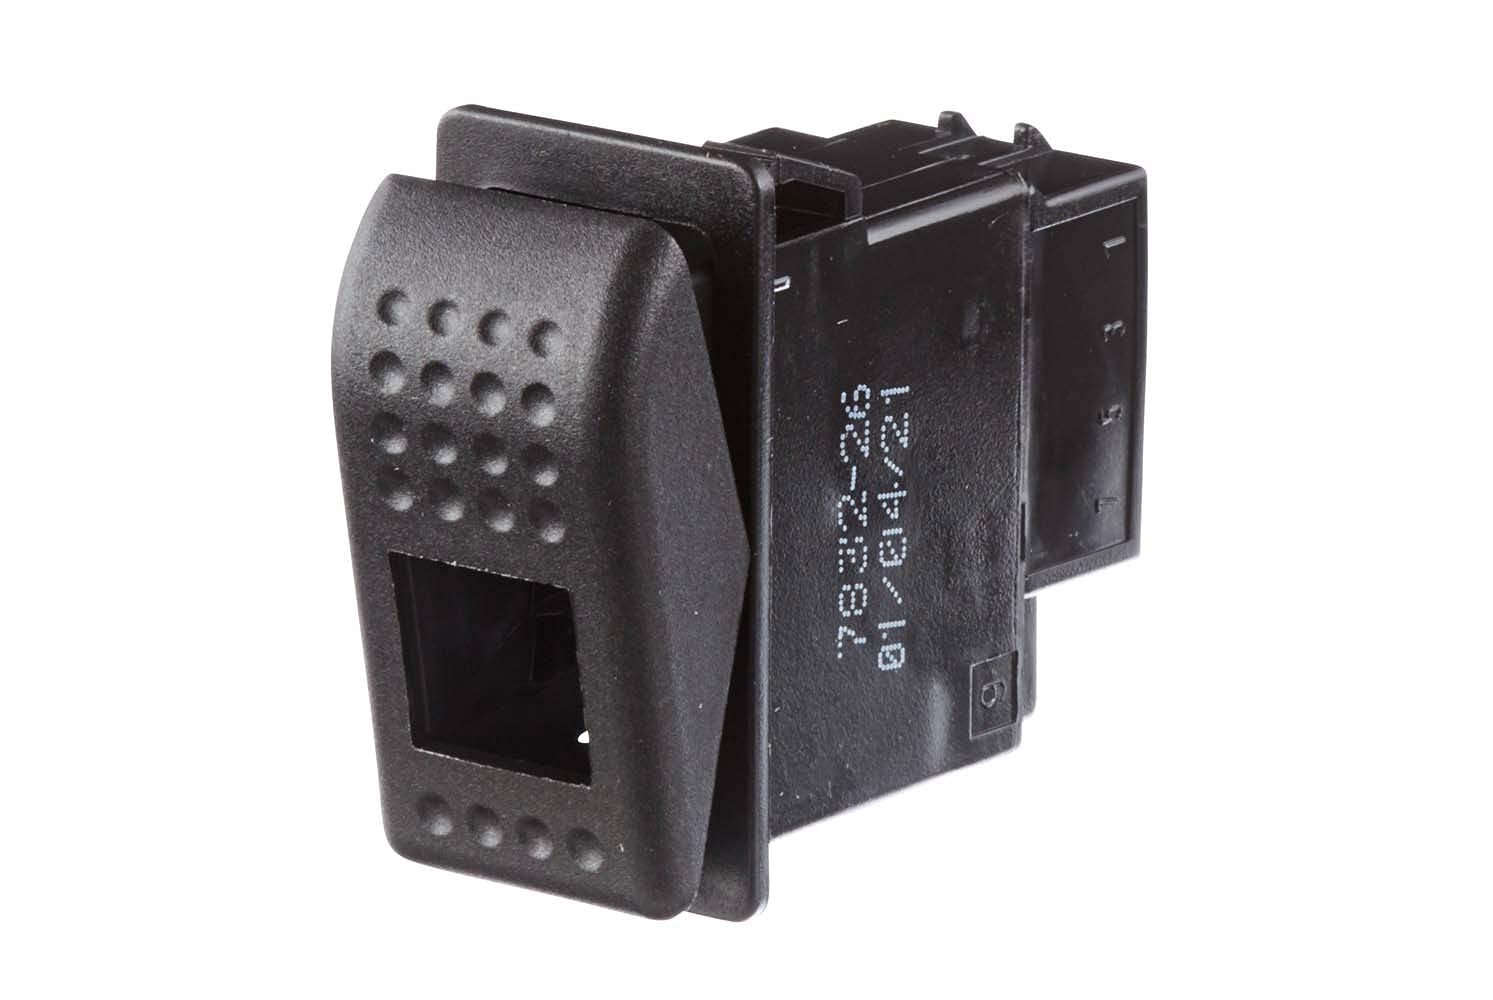 HELLA Schalter - Wippbetätigung - Ausstattungsvar.: I->0<-II - Anschlussanzahl: 6 - ohne Komfortfunktion - 6GM 007 832-261 von Hella